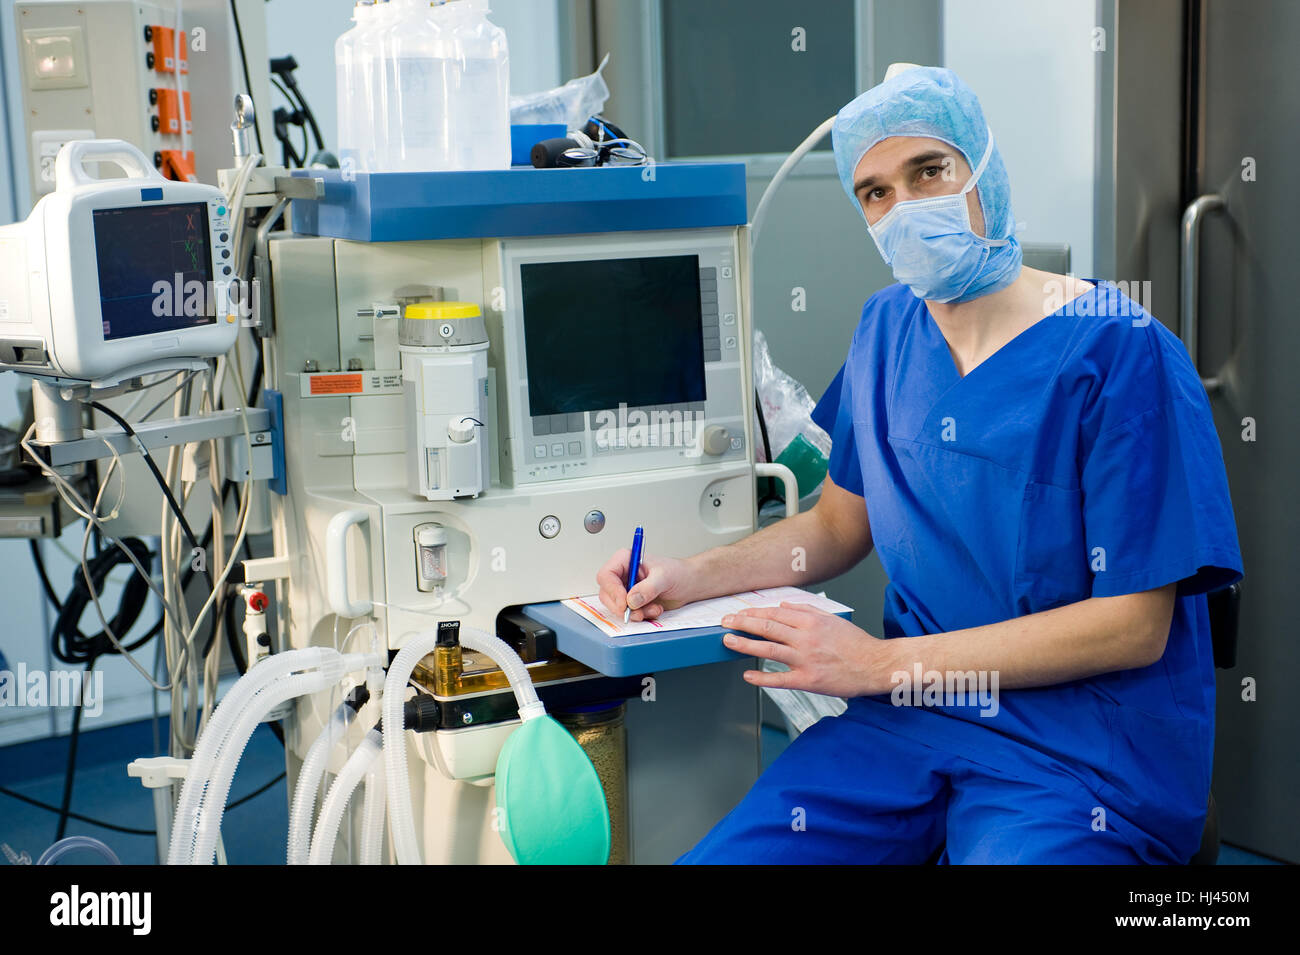 Анестезиолог вакансии